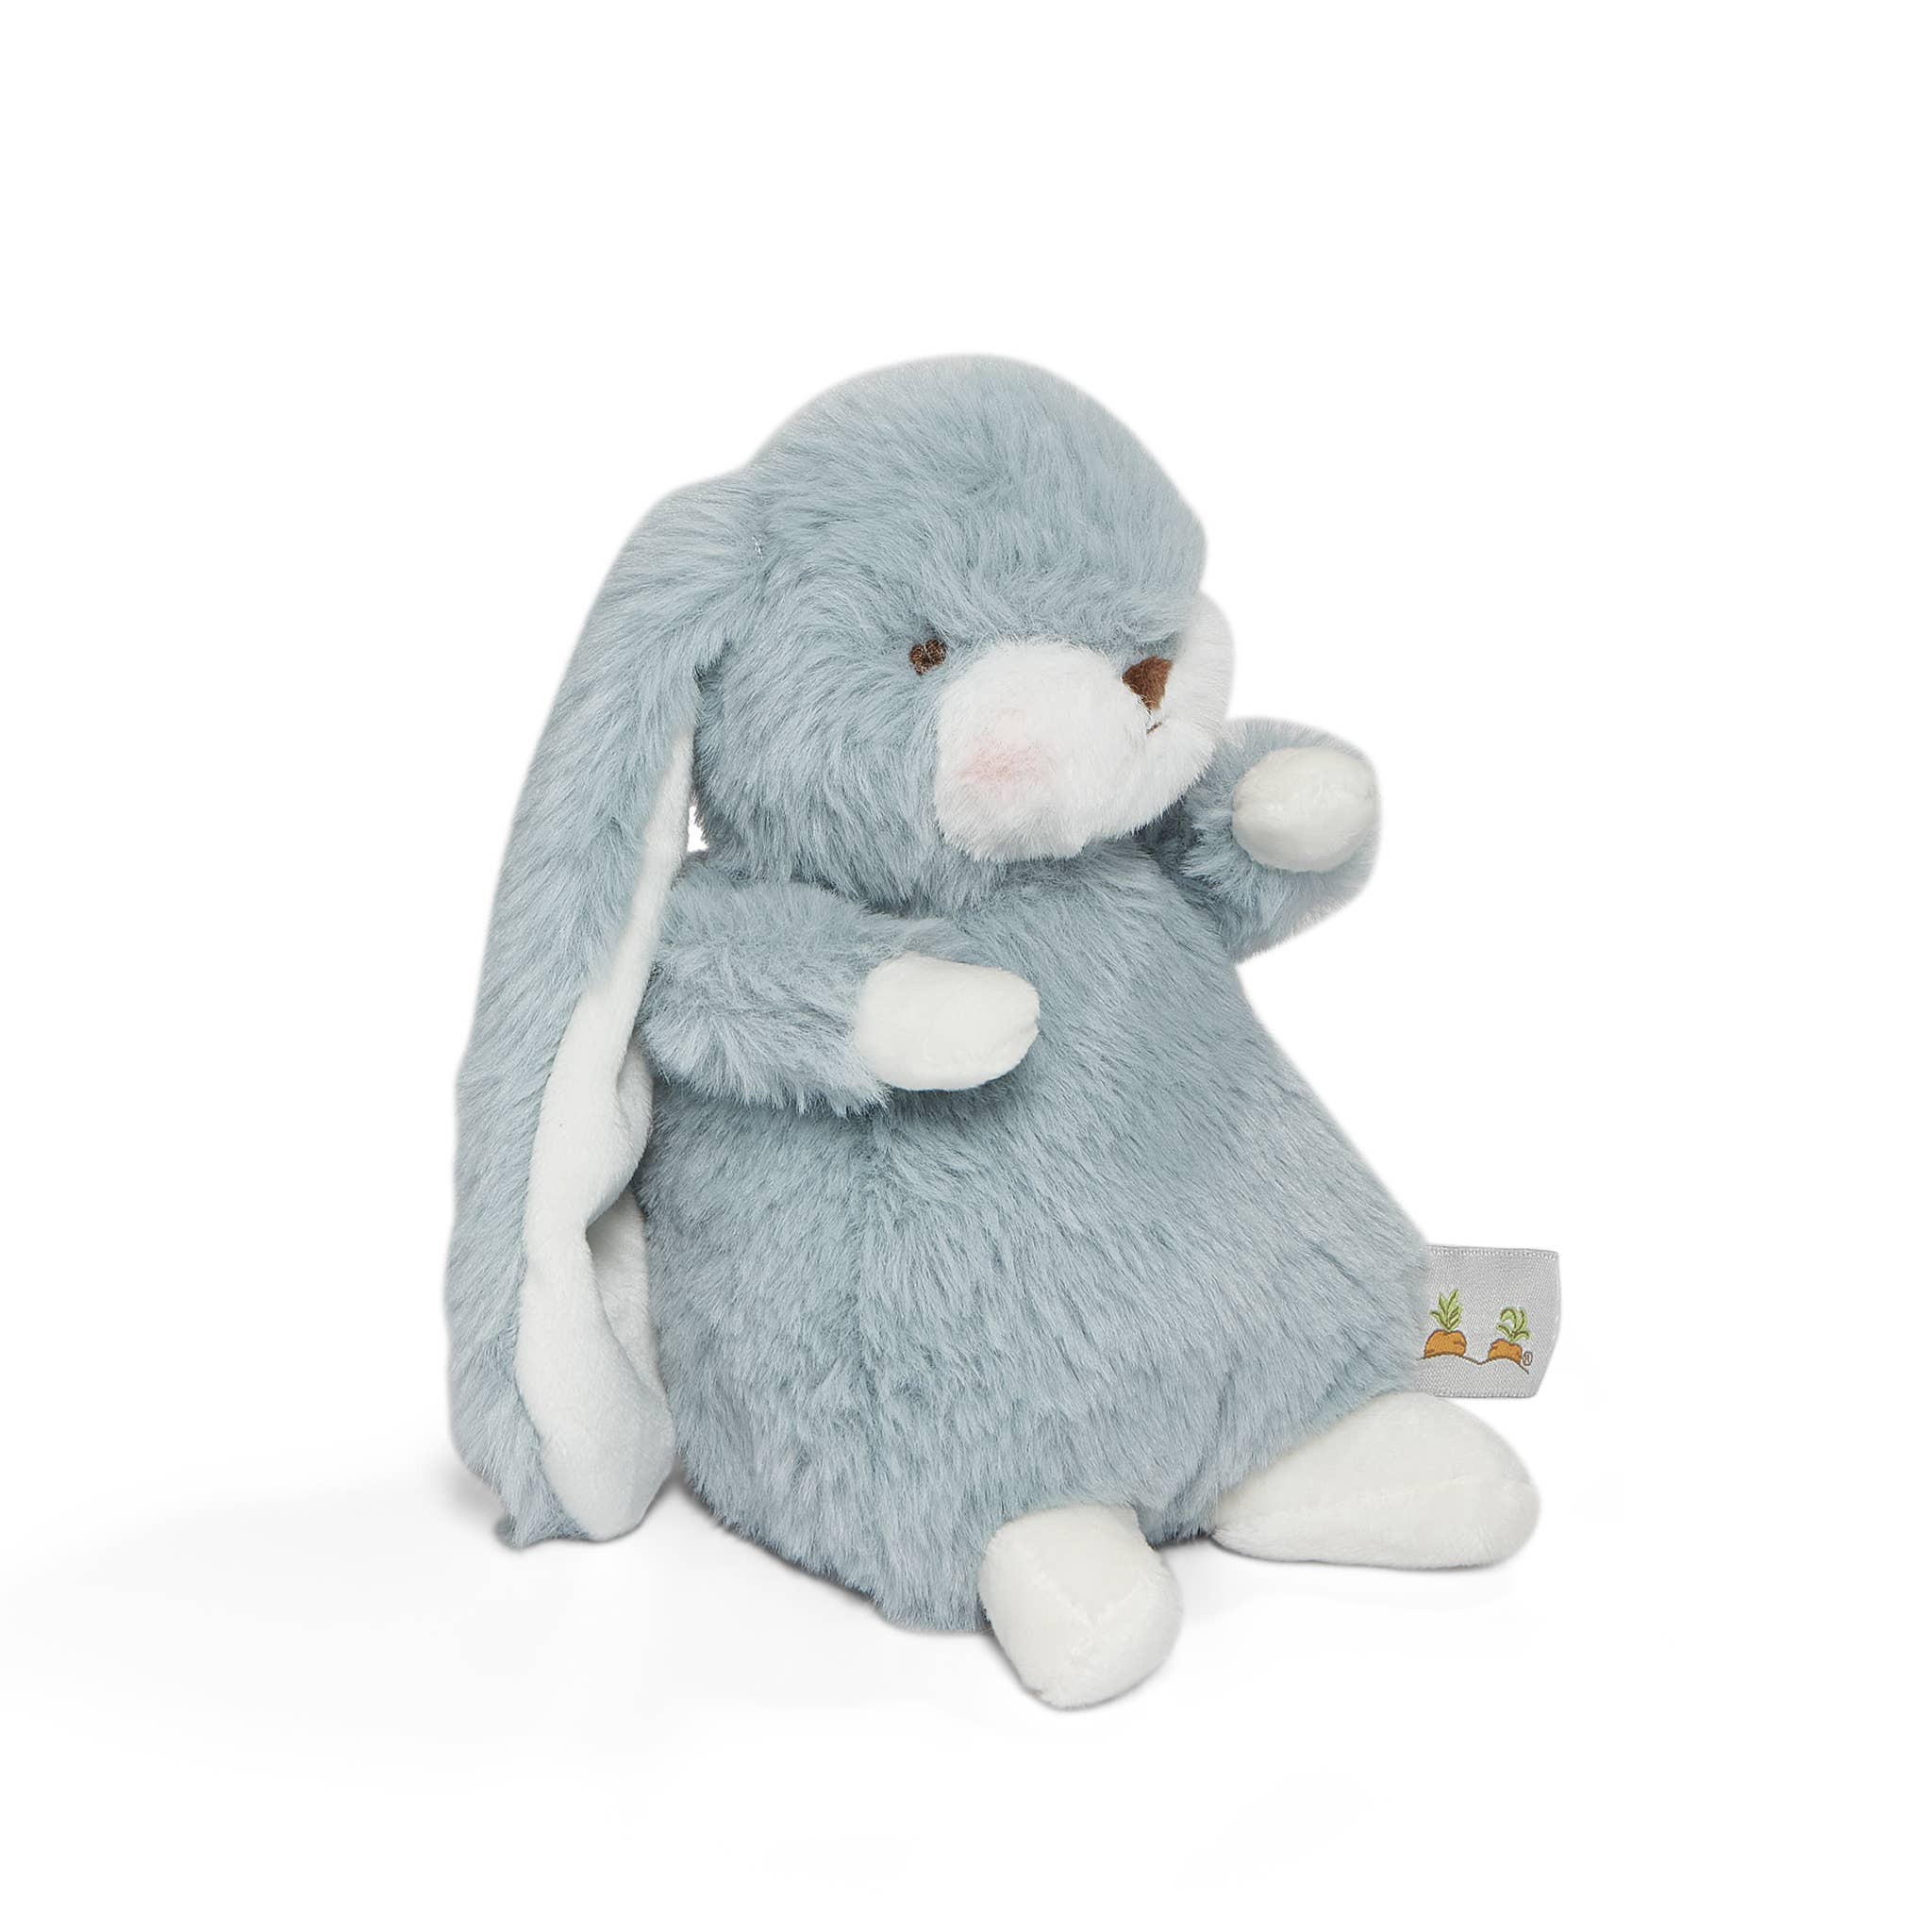 Tiny Nibble Bunny - Stormy Blue